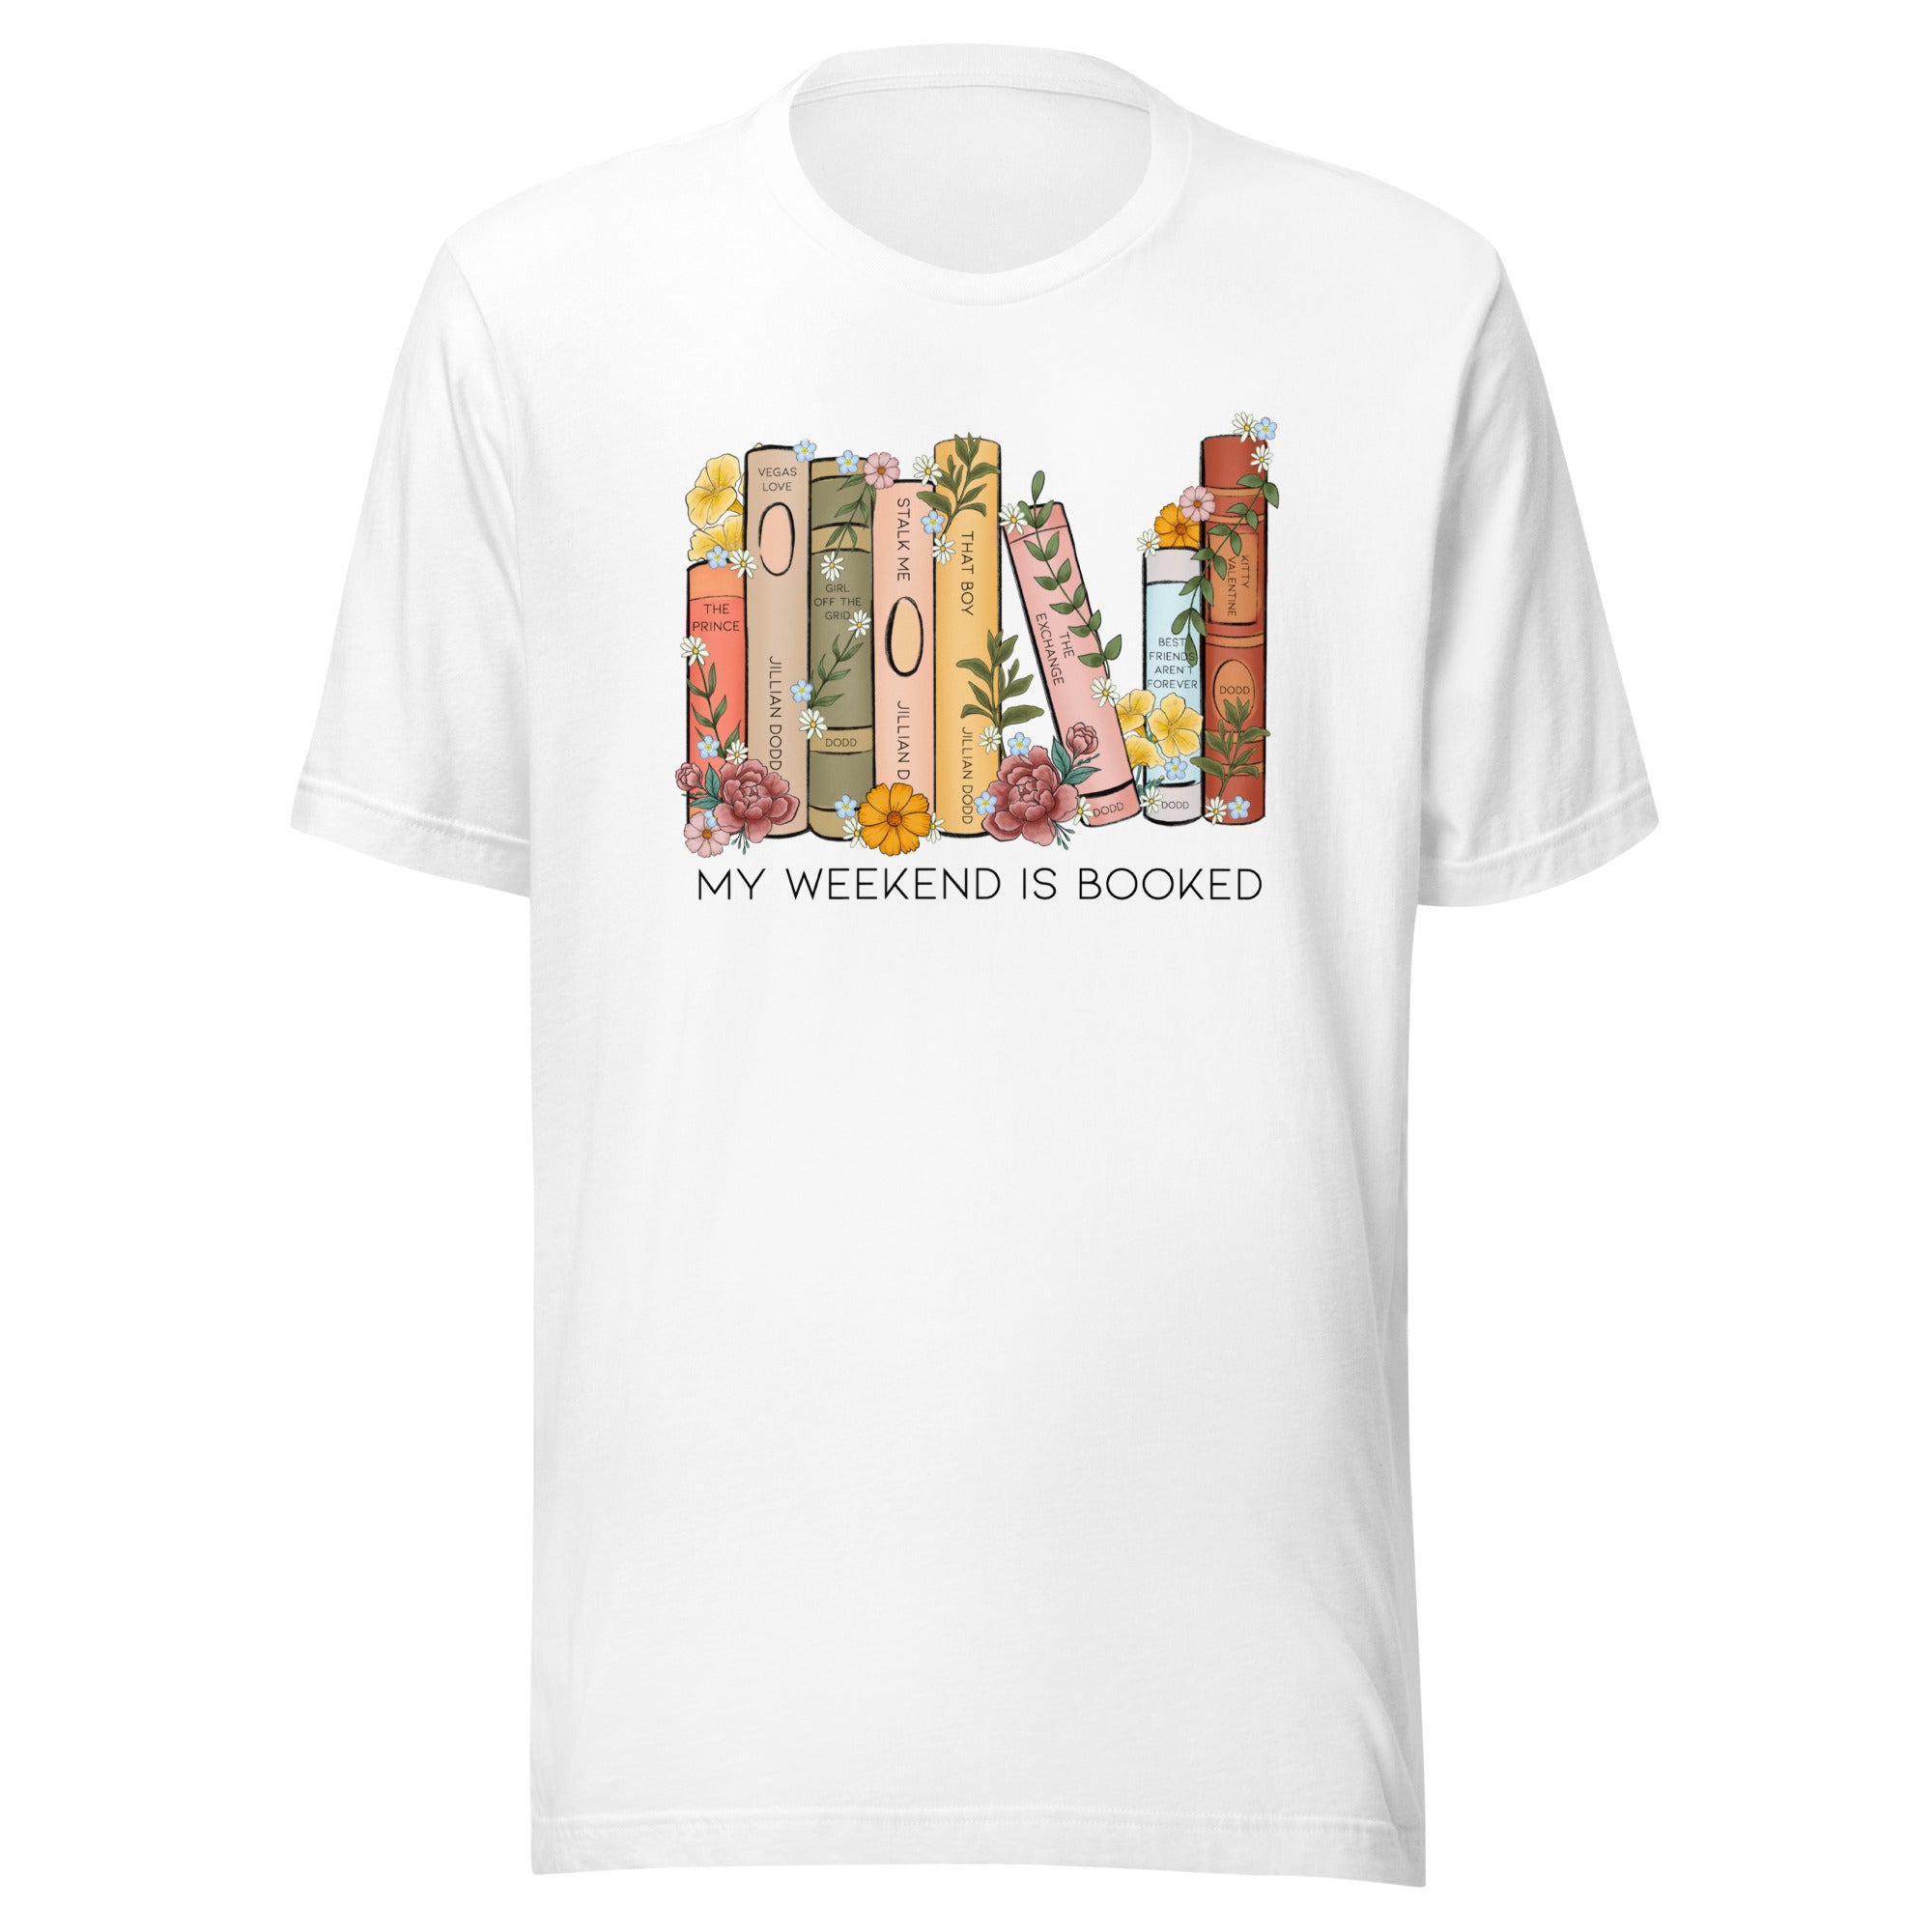 Jillian's Bookshelf T-Shirt (First in series)